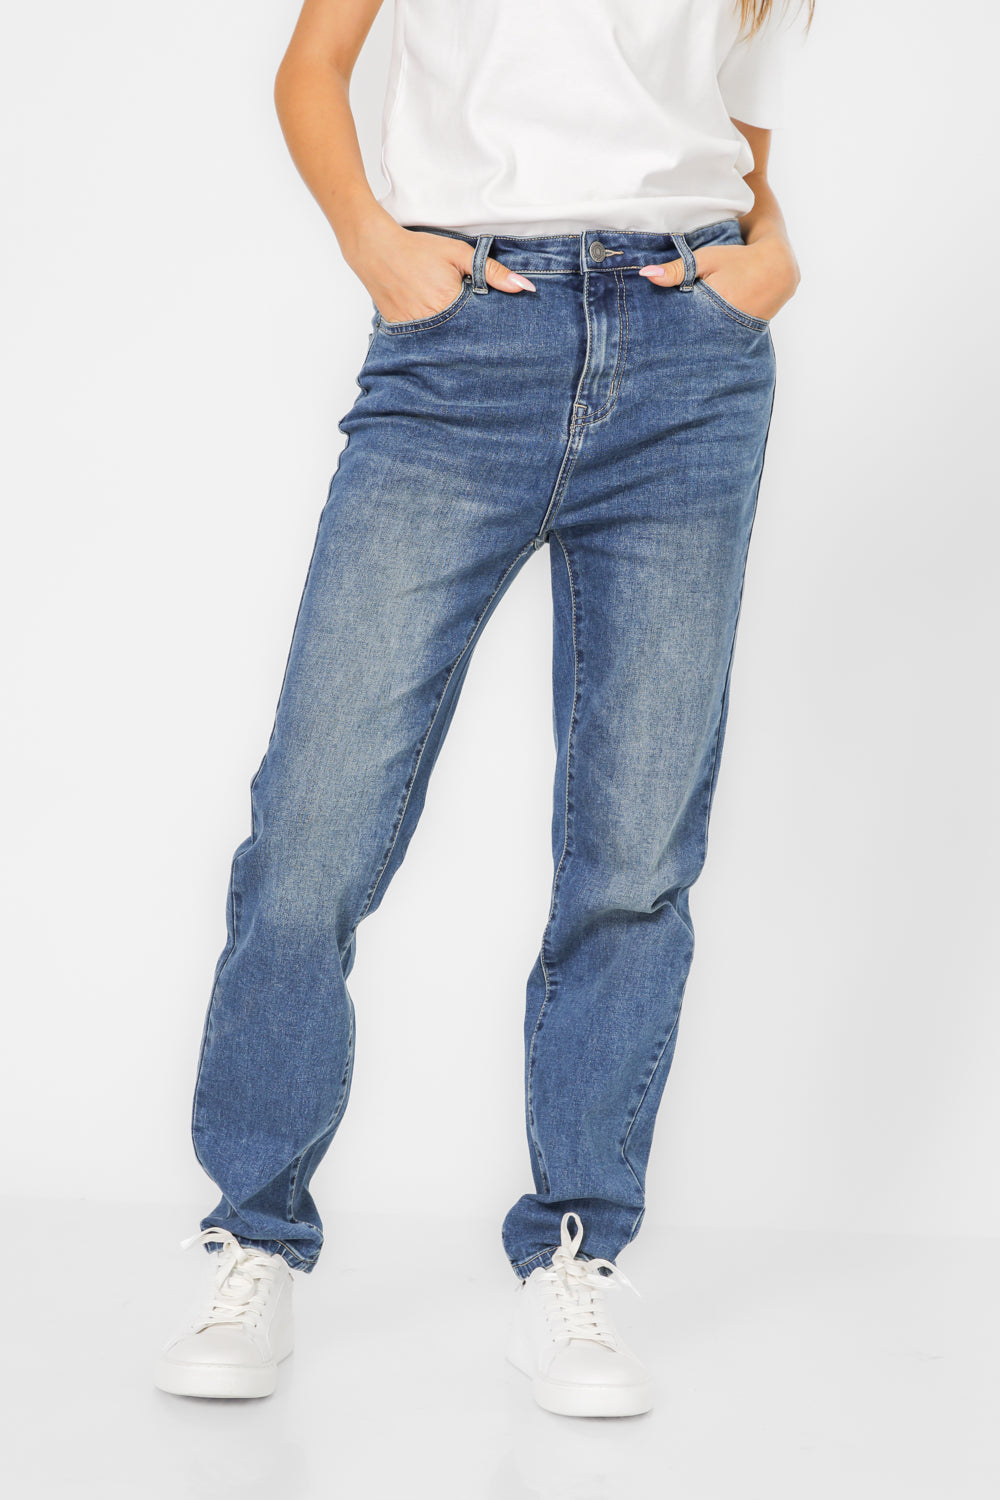 ג'ינס סקיני בצבע כחול כהה